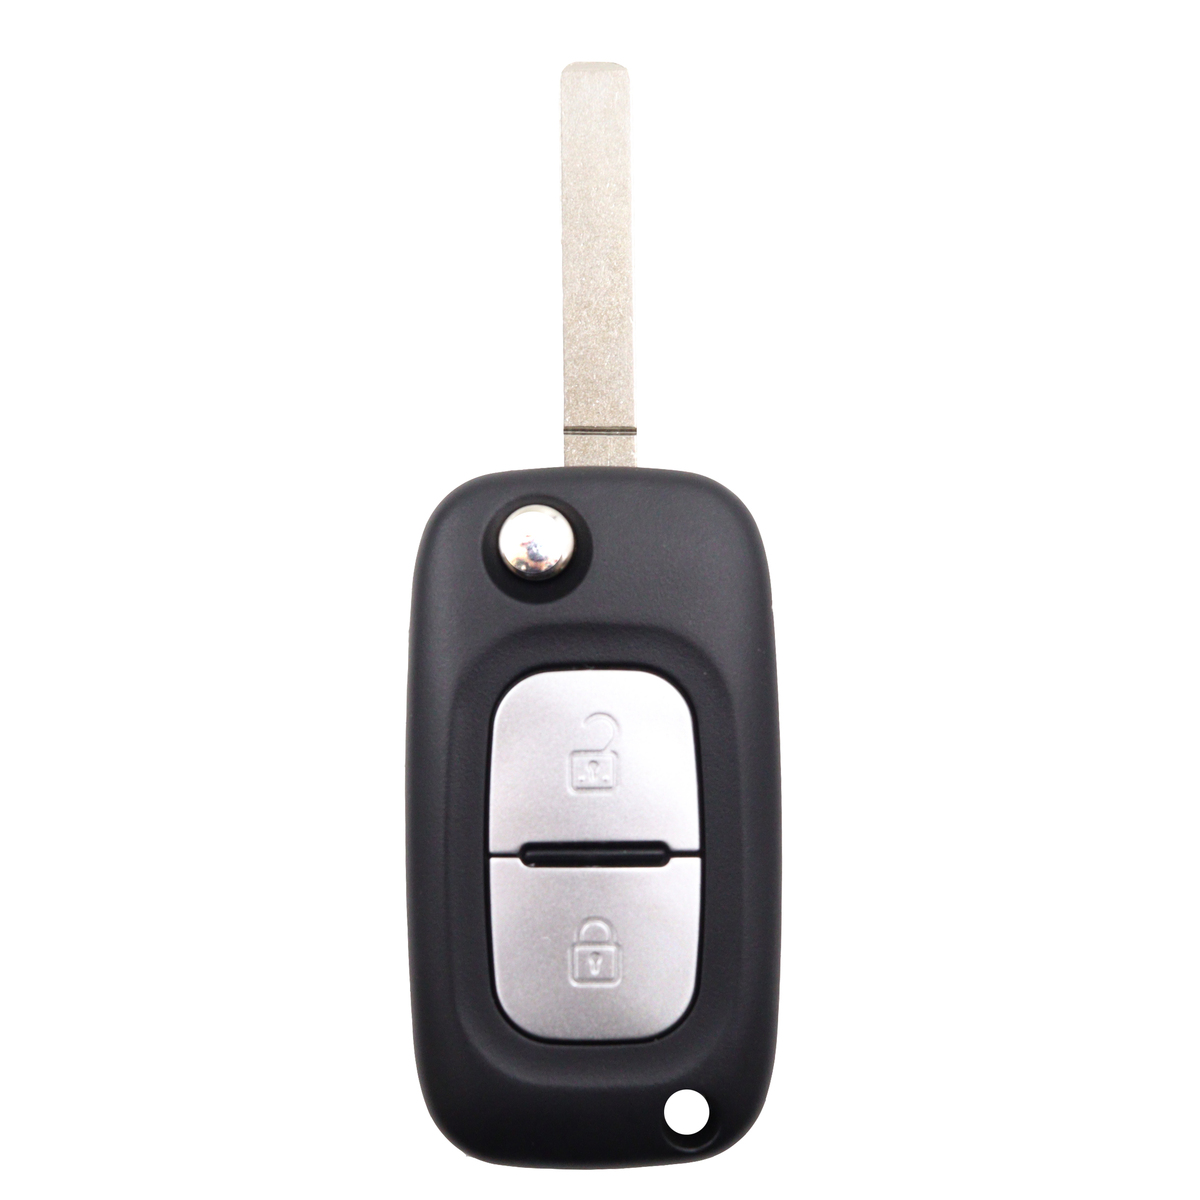 Renault compatible 2 button remote 434 MHz